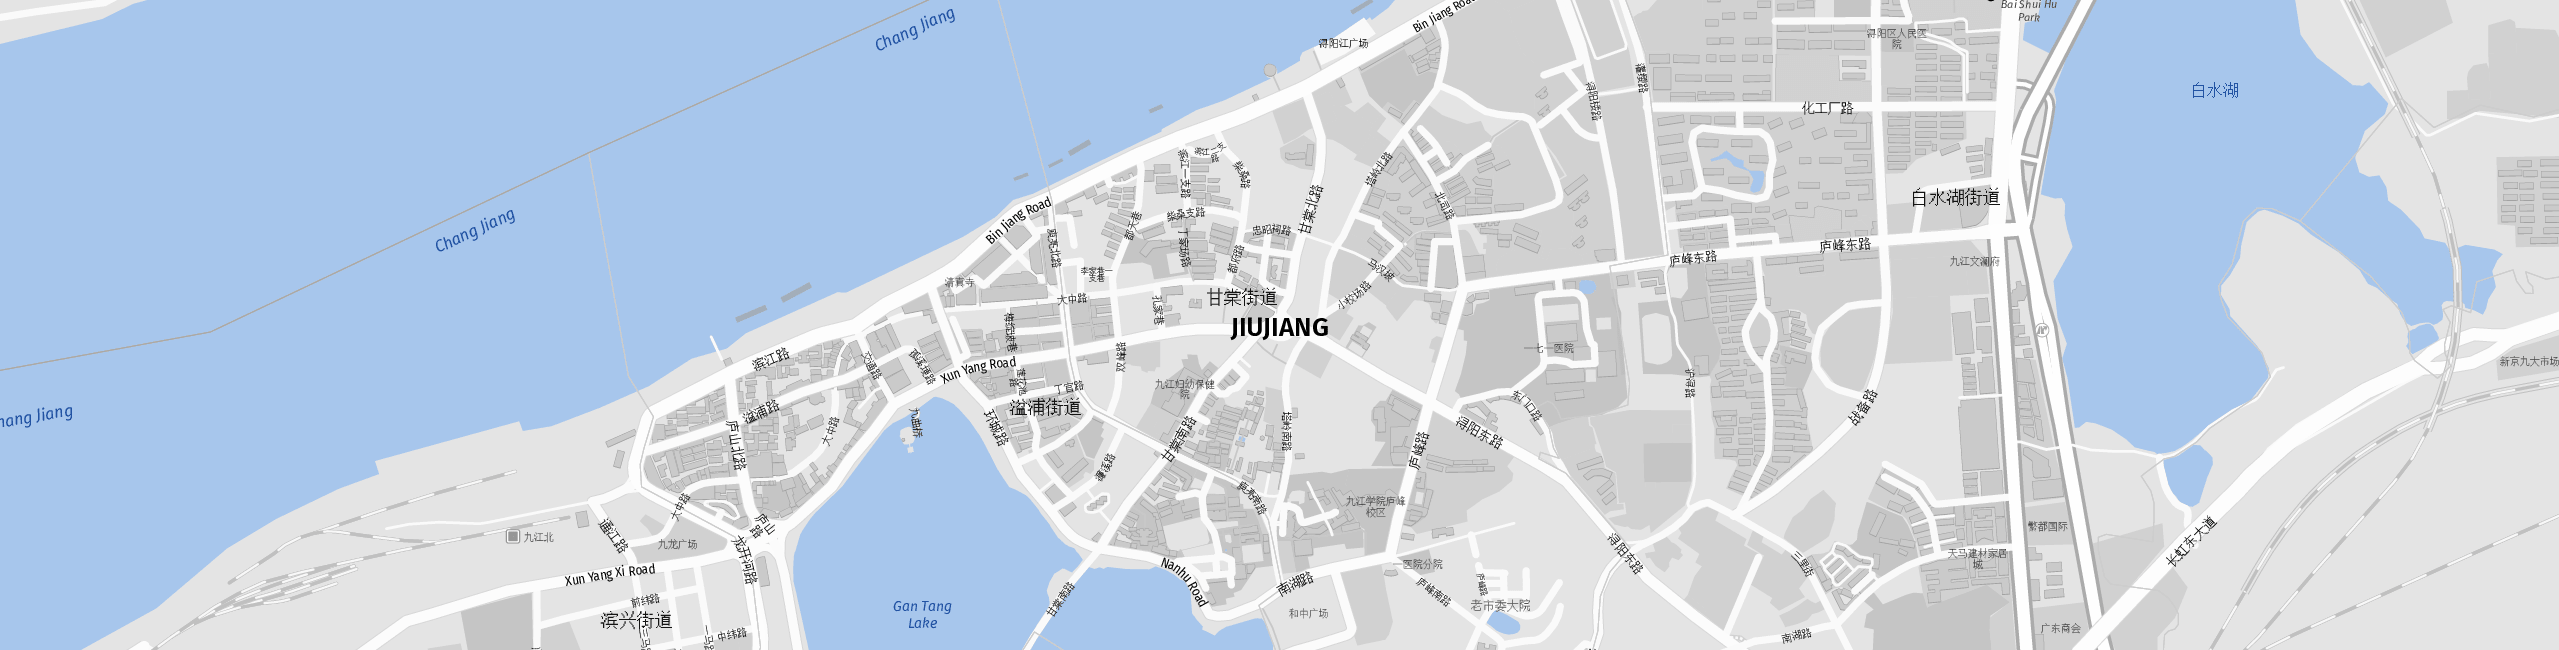 Stadtplan Jiujiang zum Downloaden.